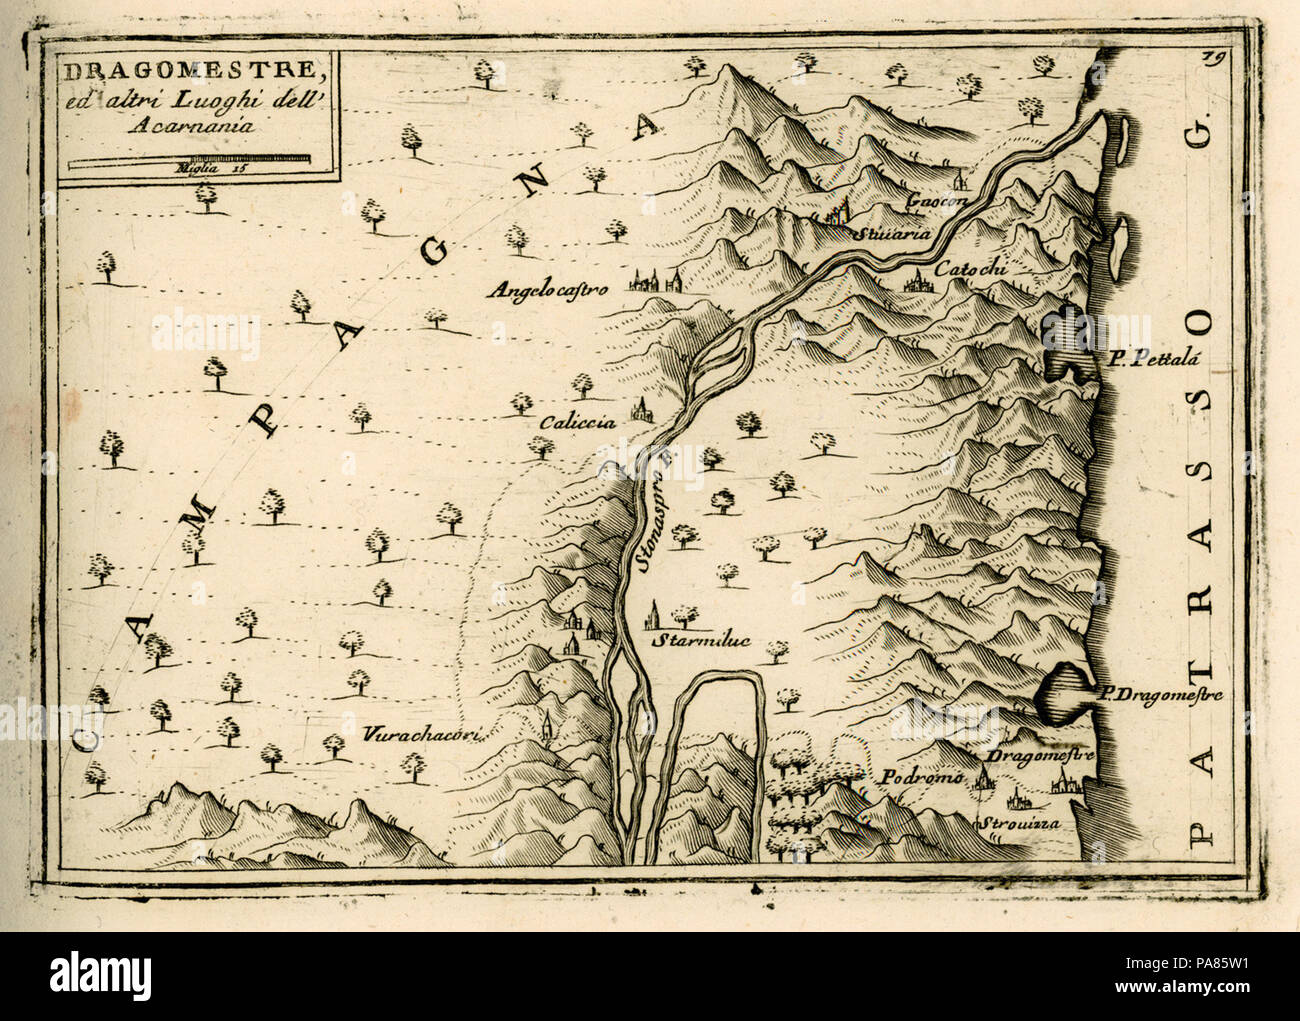 70 Dragomestre ed altri luoghi dell'Acarnania - Coronelli Vincenzo - 1688 Stock Photo